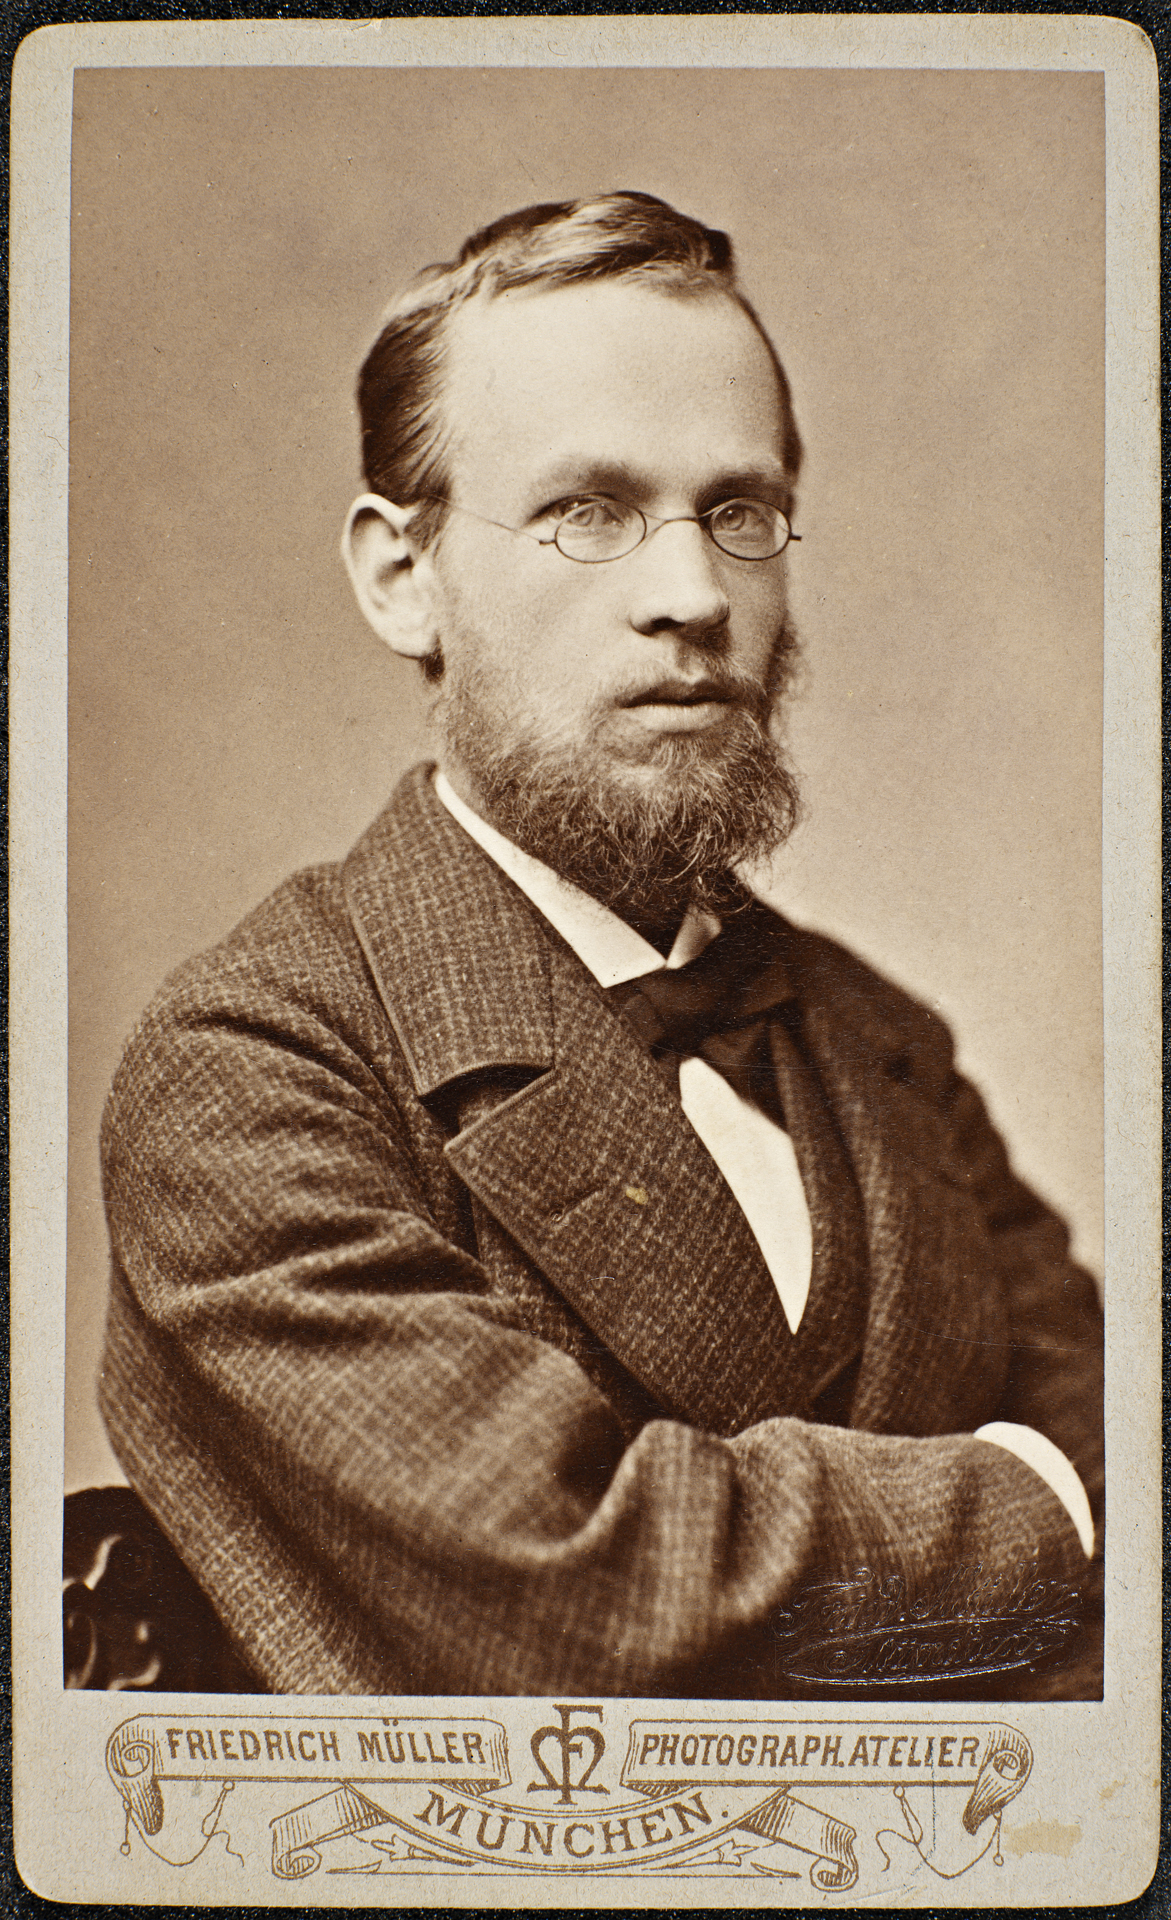 Portrett av Erik Werenskiold, 1880, fotograf Friedrich Müller (München).
     Nasjonalbiblioteket. Fra
     http://upload.wikimedia.org/wikipedia/commons/6/67/Portrett_av_Erik_Werenskiold%2C_1880.jpg